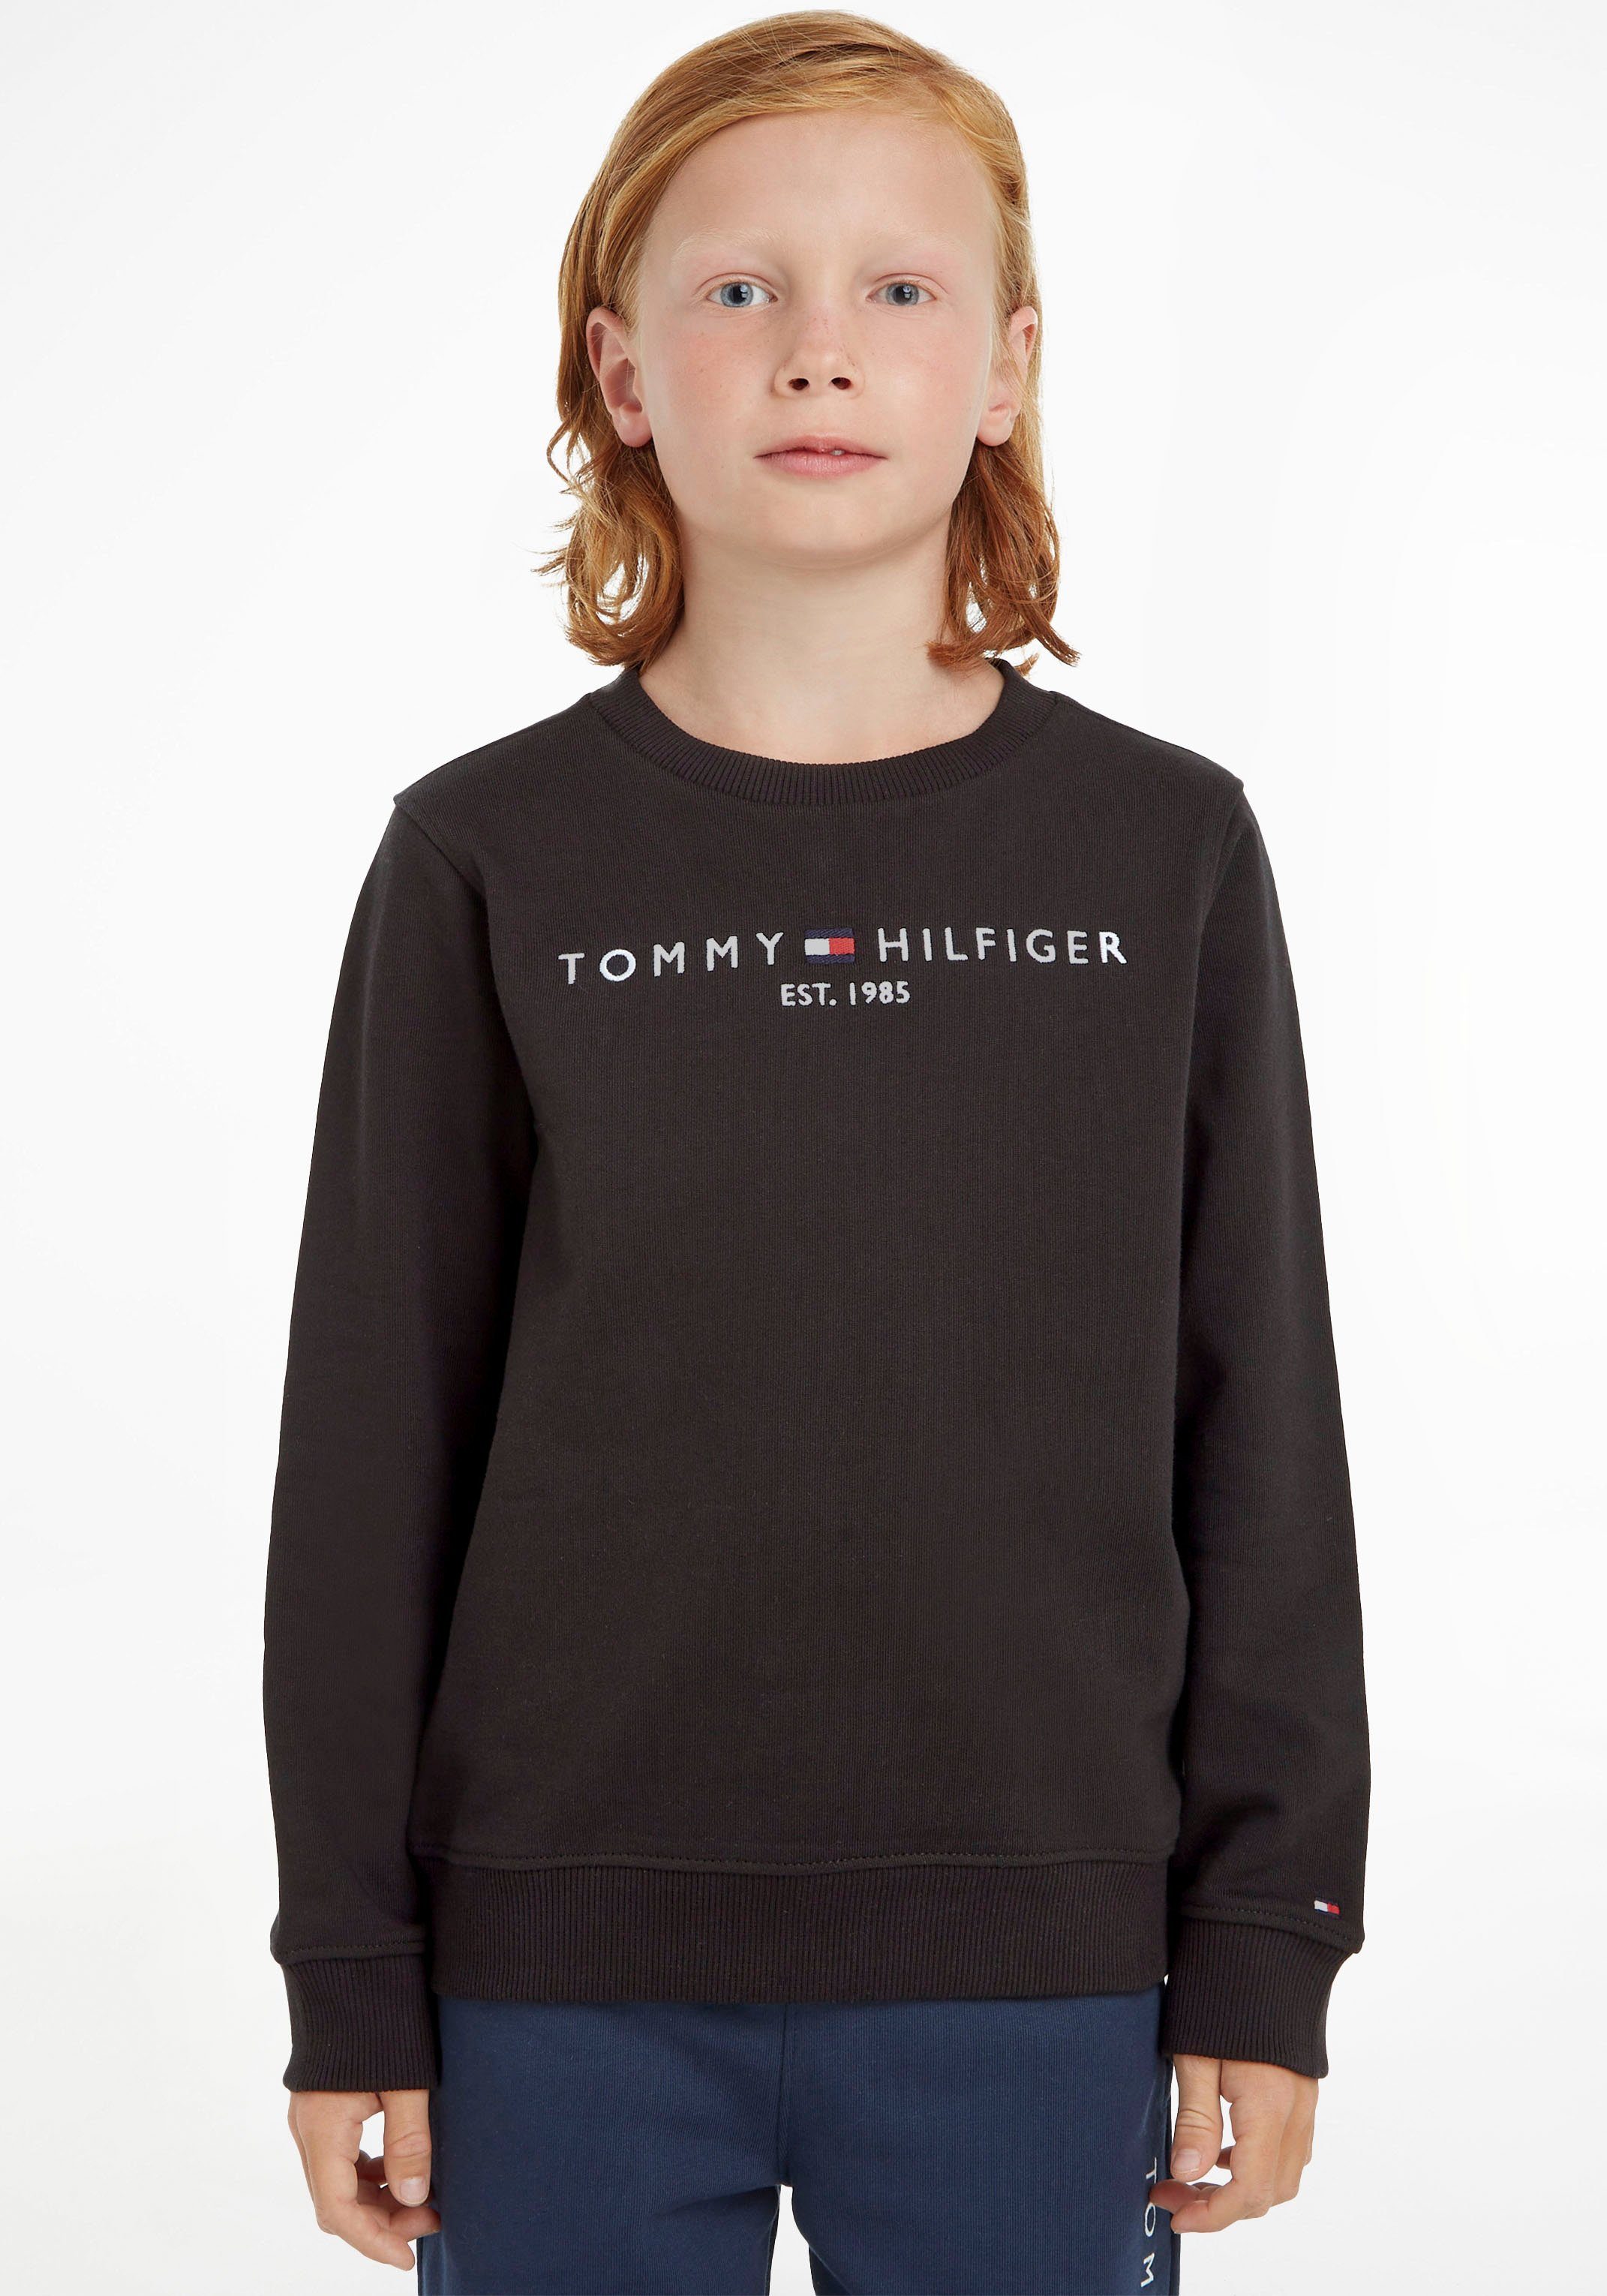 Tommy Hilfiger Sweatshirt ESSENTIAL für und Jungen Mädchen SWEATSHIRT